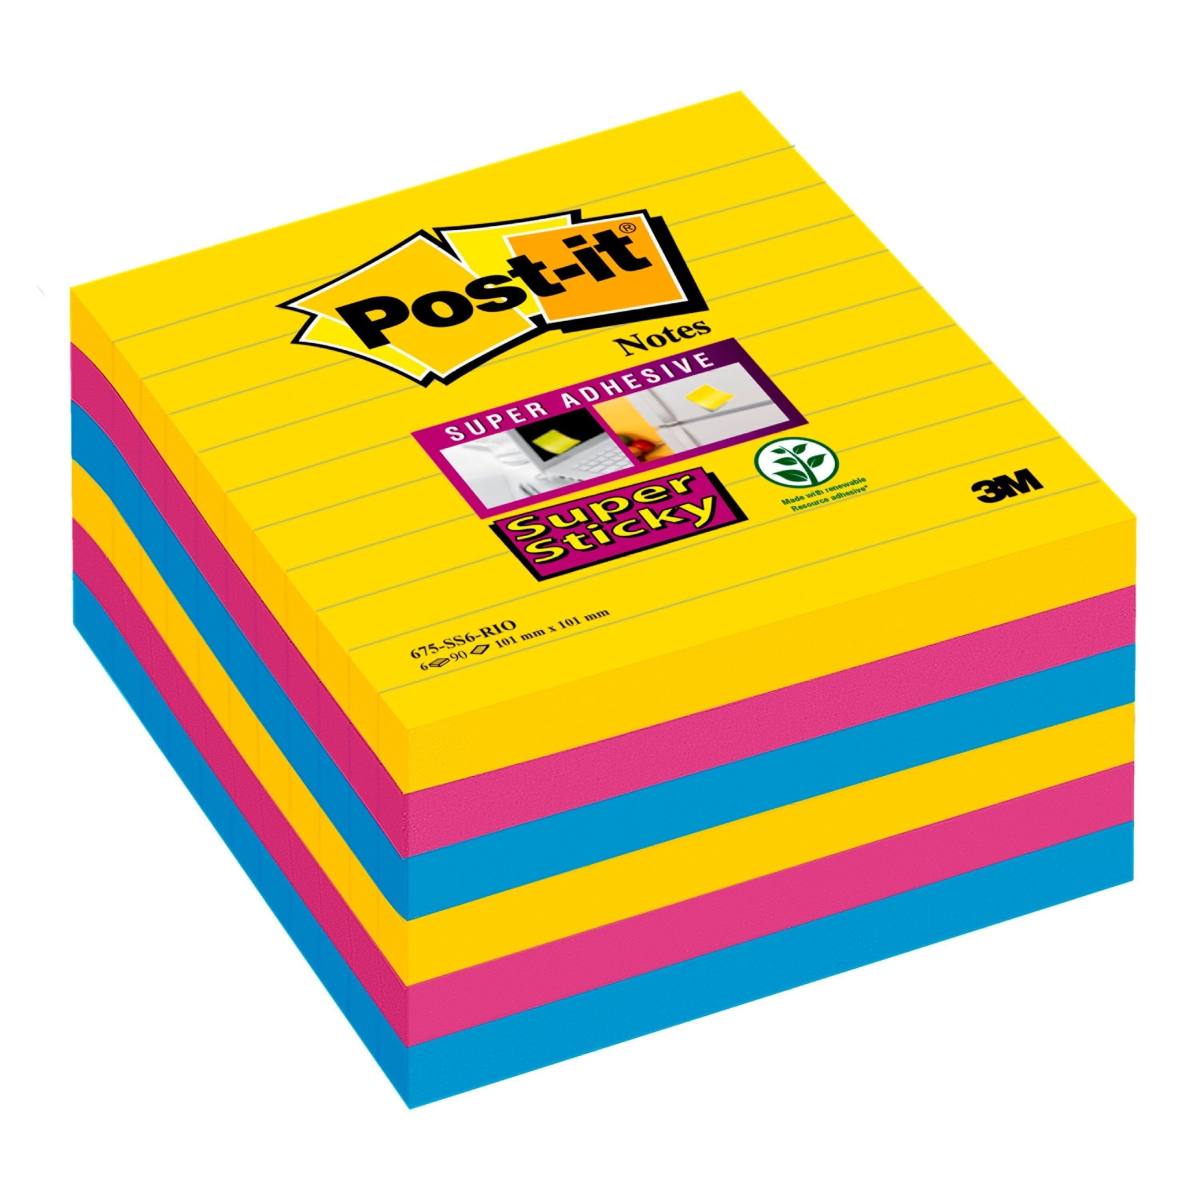 3M Post-it Super Sticky Notes 675-S6R, 6 blocchetti da 90 fogli, collezione Rio de Janeiro: ultra-giallo, -blu, -rosa, 101 mm x 101 mm, foderato, certificato PEFC